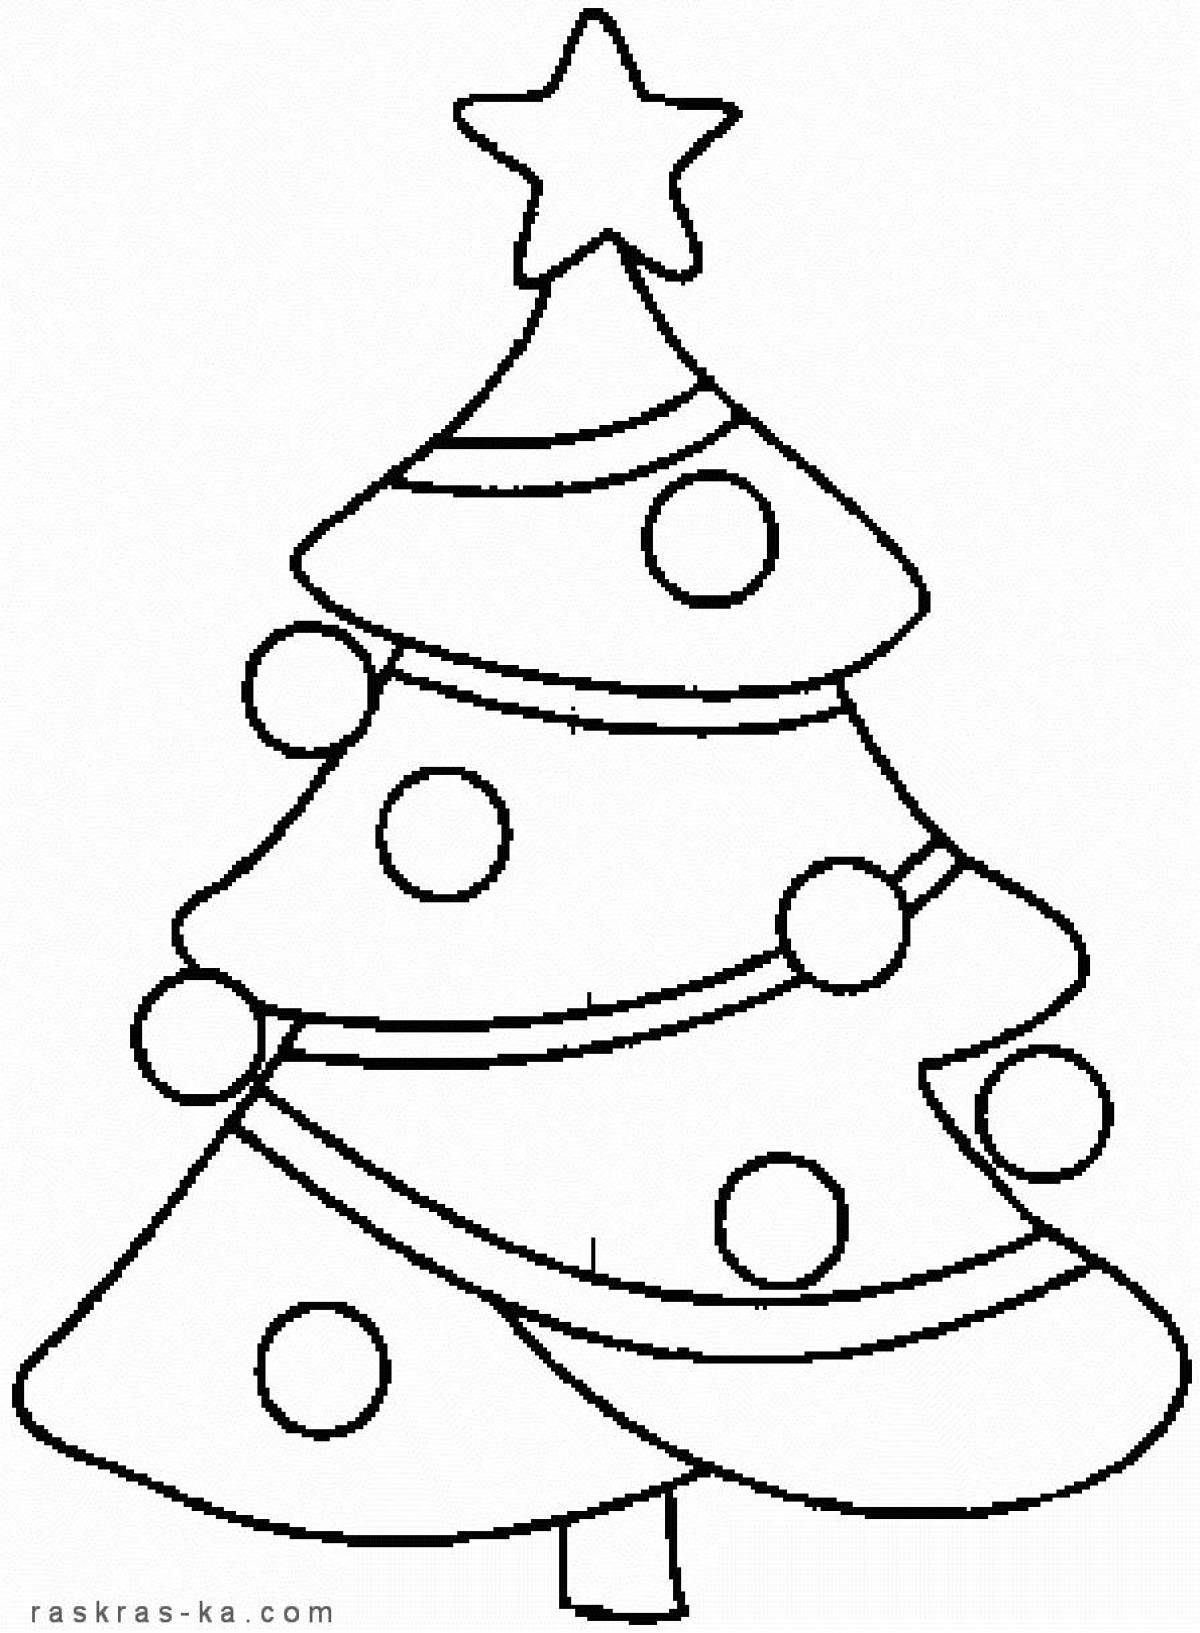 Великолепная раскраска рождественская елка для детей 3-4 лет